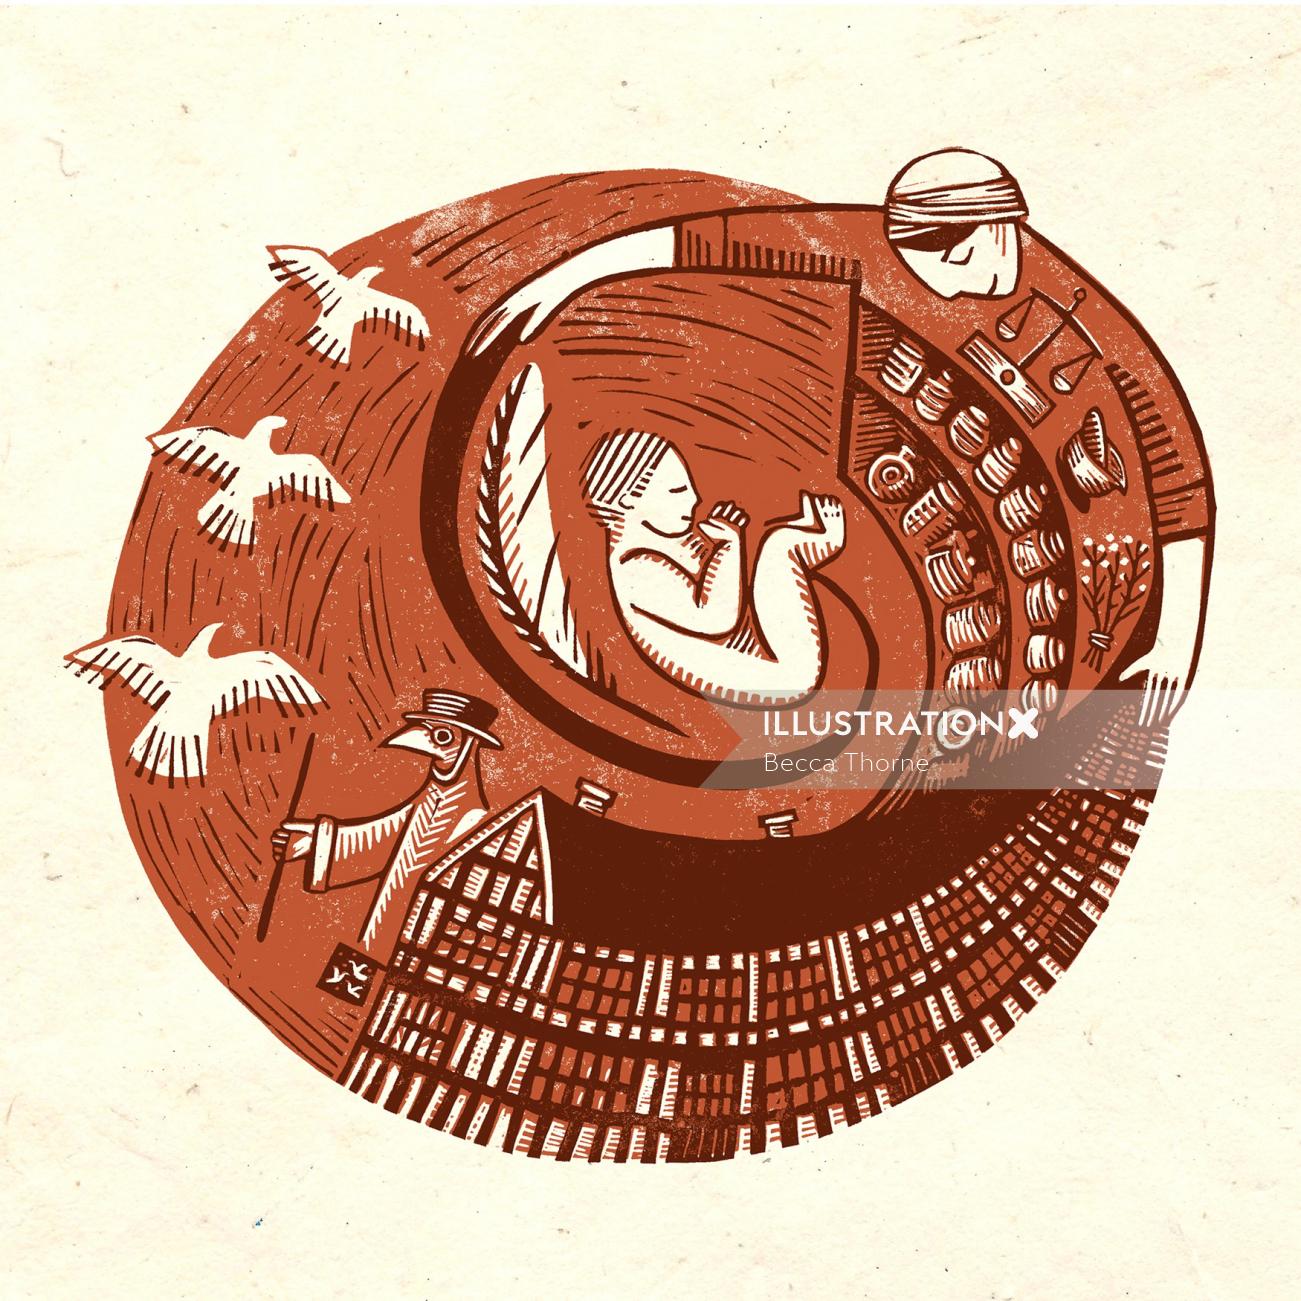 セピア調の円形のリノカット版画で、助産師が薬剤師と子宮内の赤ちゃんを包み込んでいる様子が描かれています。